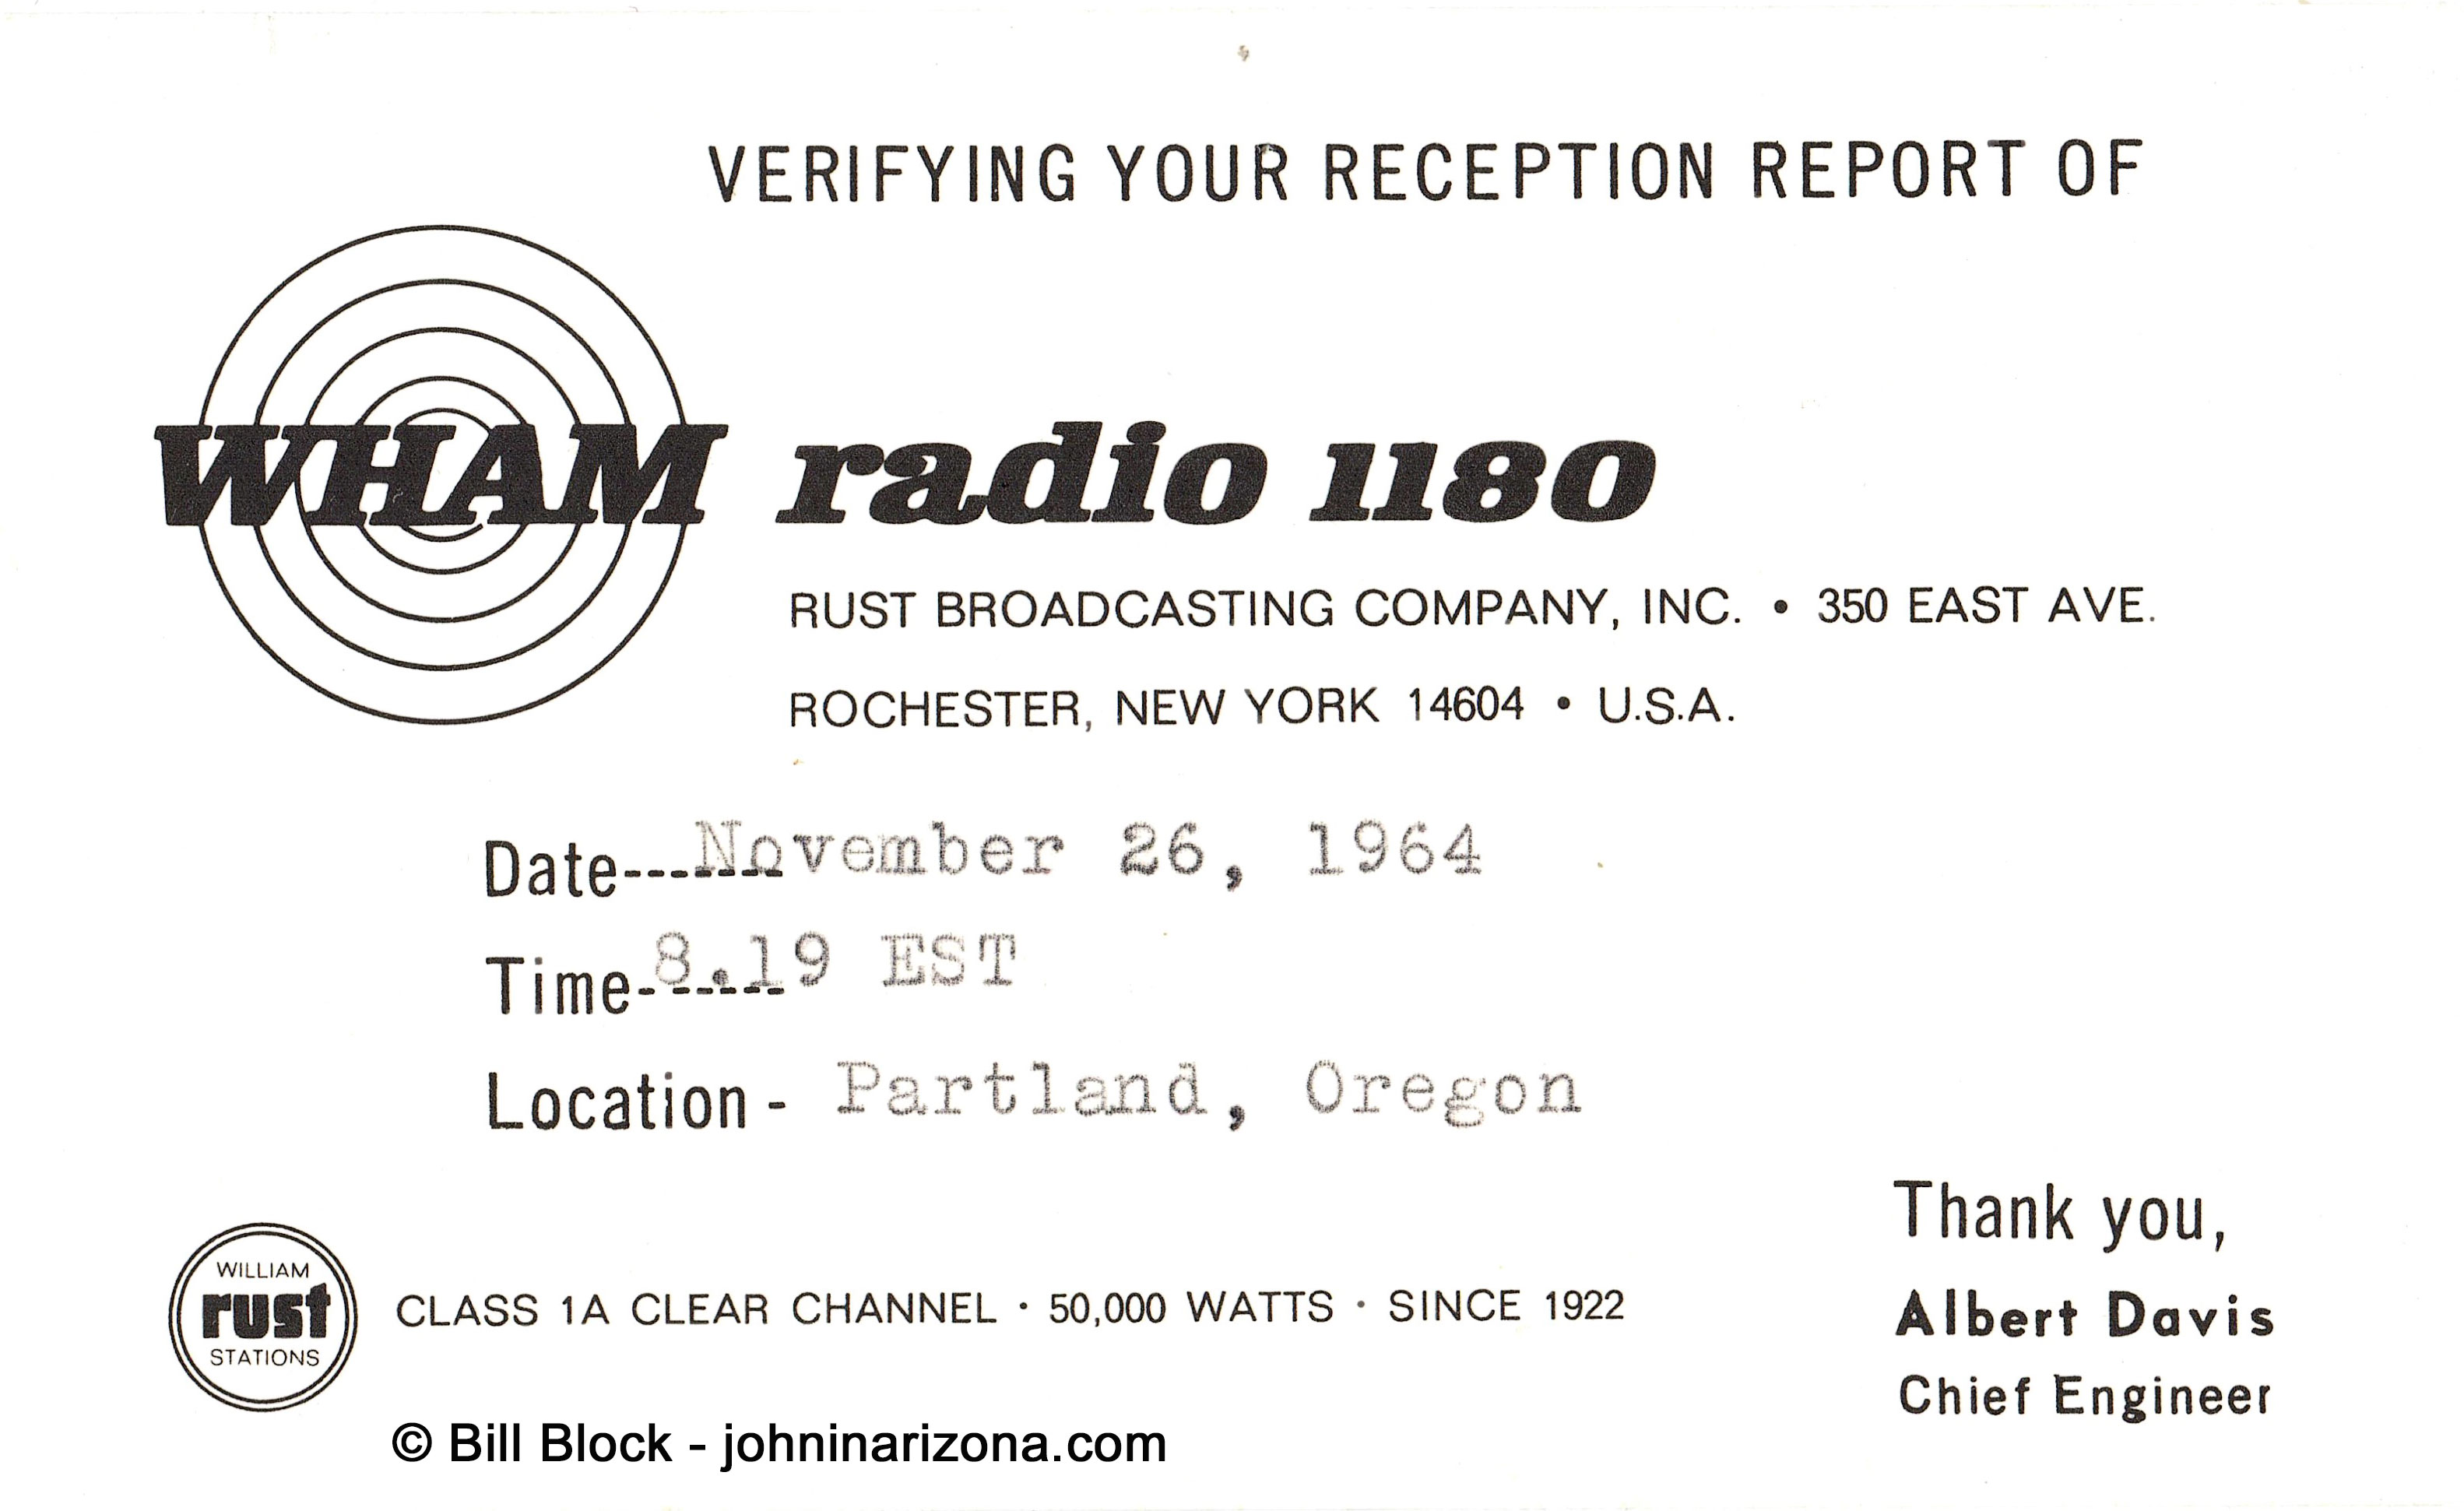 WHAM Radio 1180 Rochester, New York